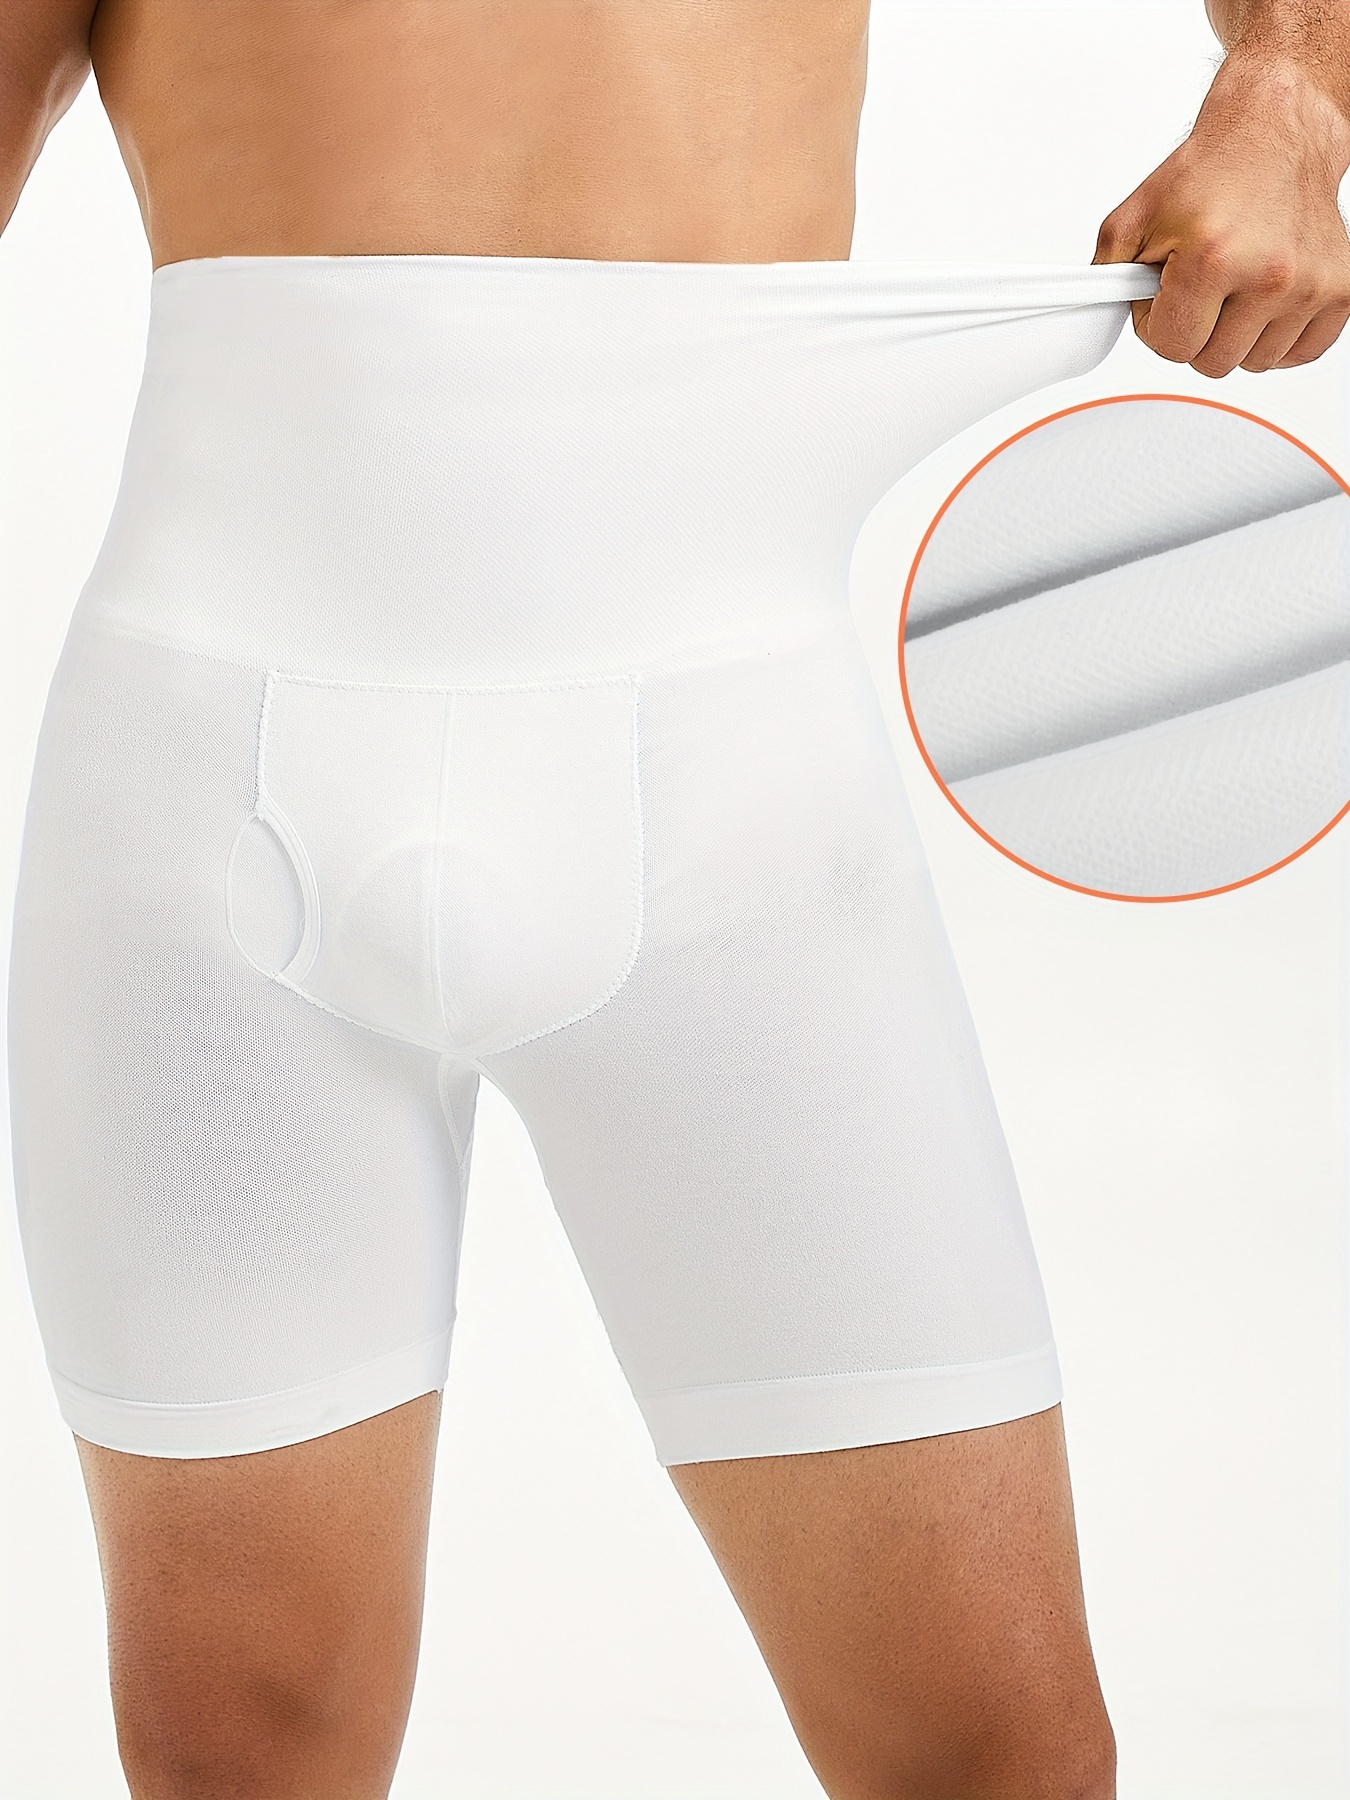 High-waist compression briefs - Underwear - UNDERWEAR